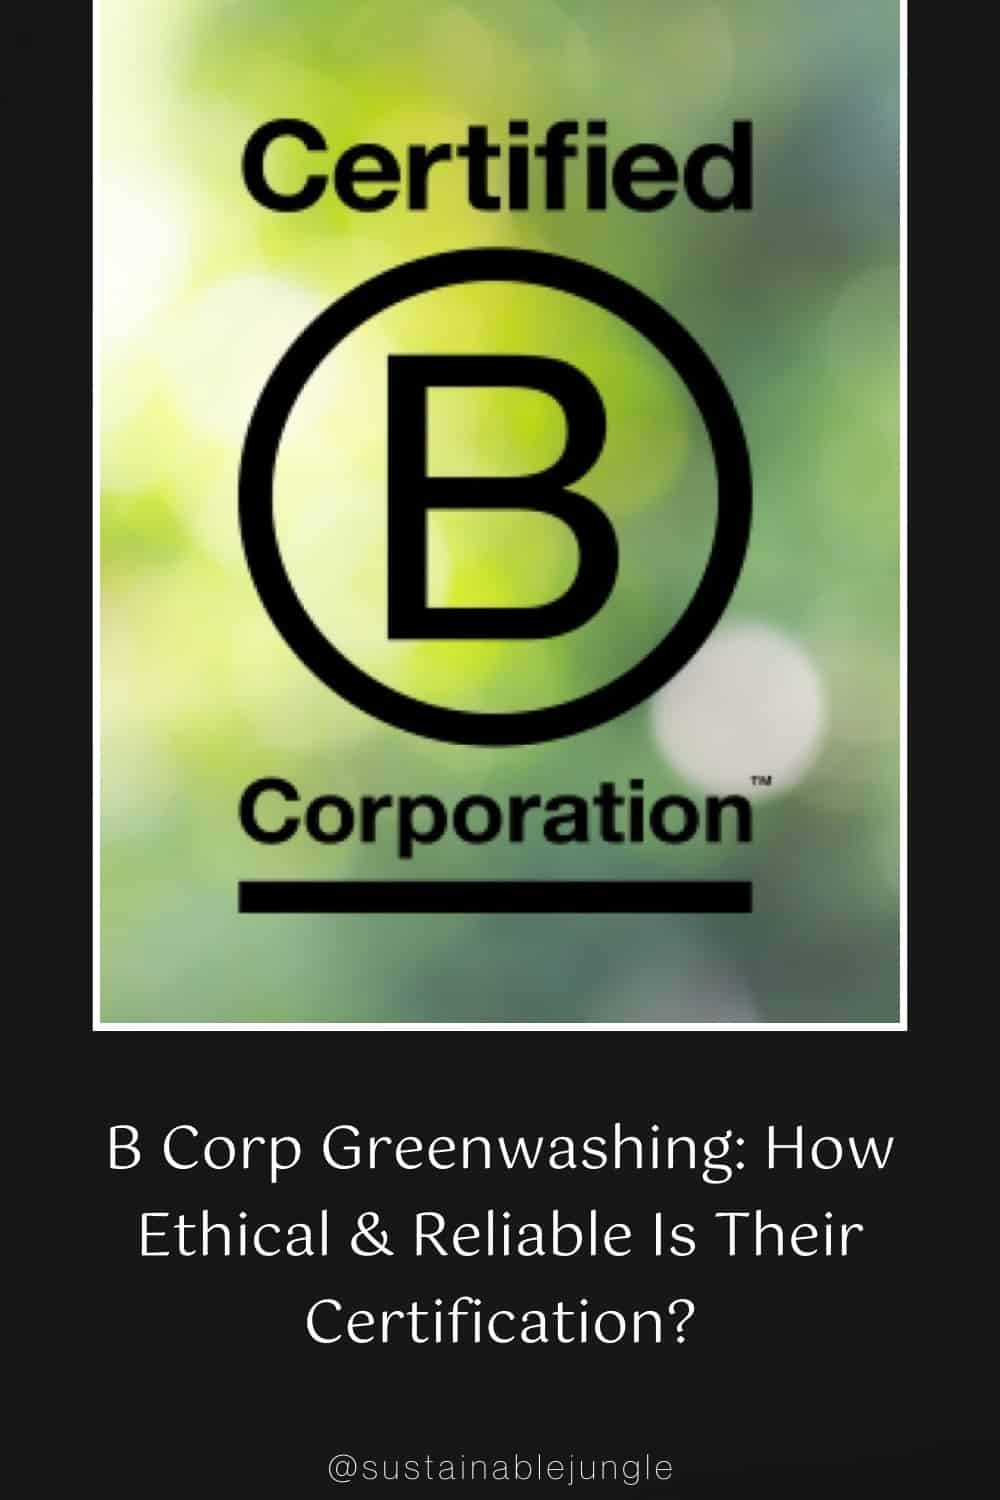 企业洗绿:他们的认证有多道德和可靠?#企业绿色清洗#企业问题#企业伦理#企业争议#可持续丛林图片由Getty Images 9600GTX在Canva Pro上提供